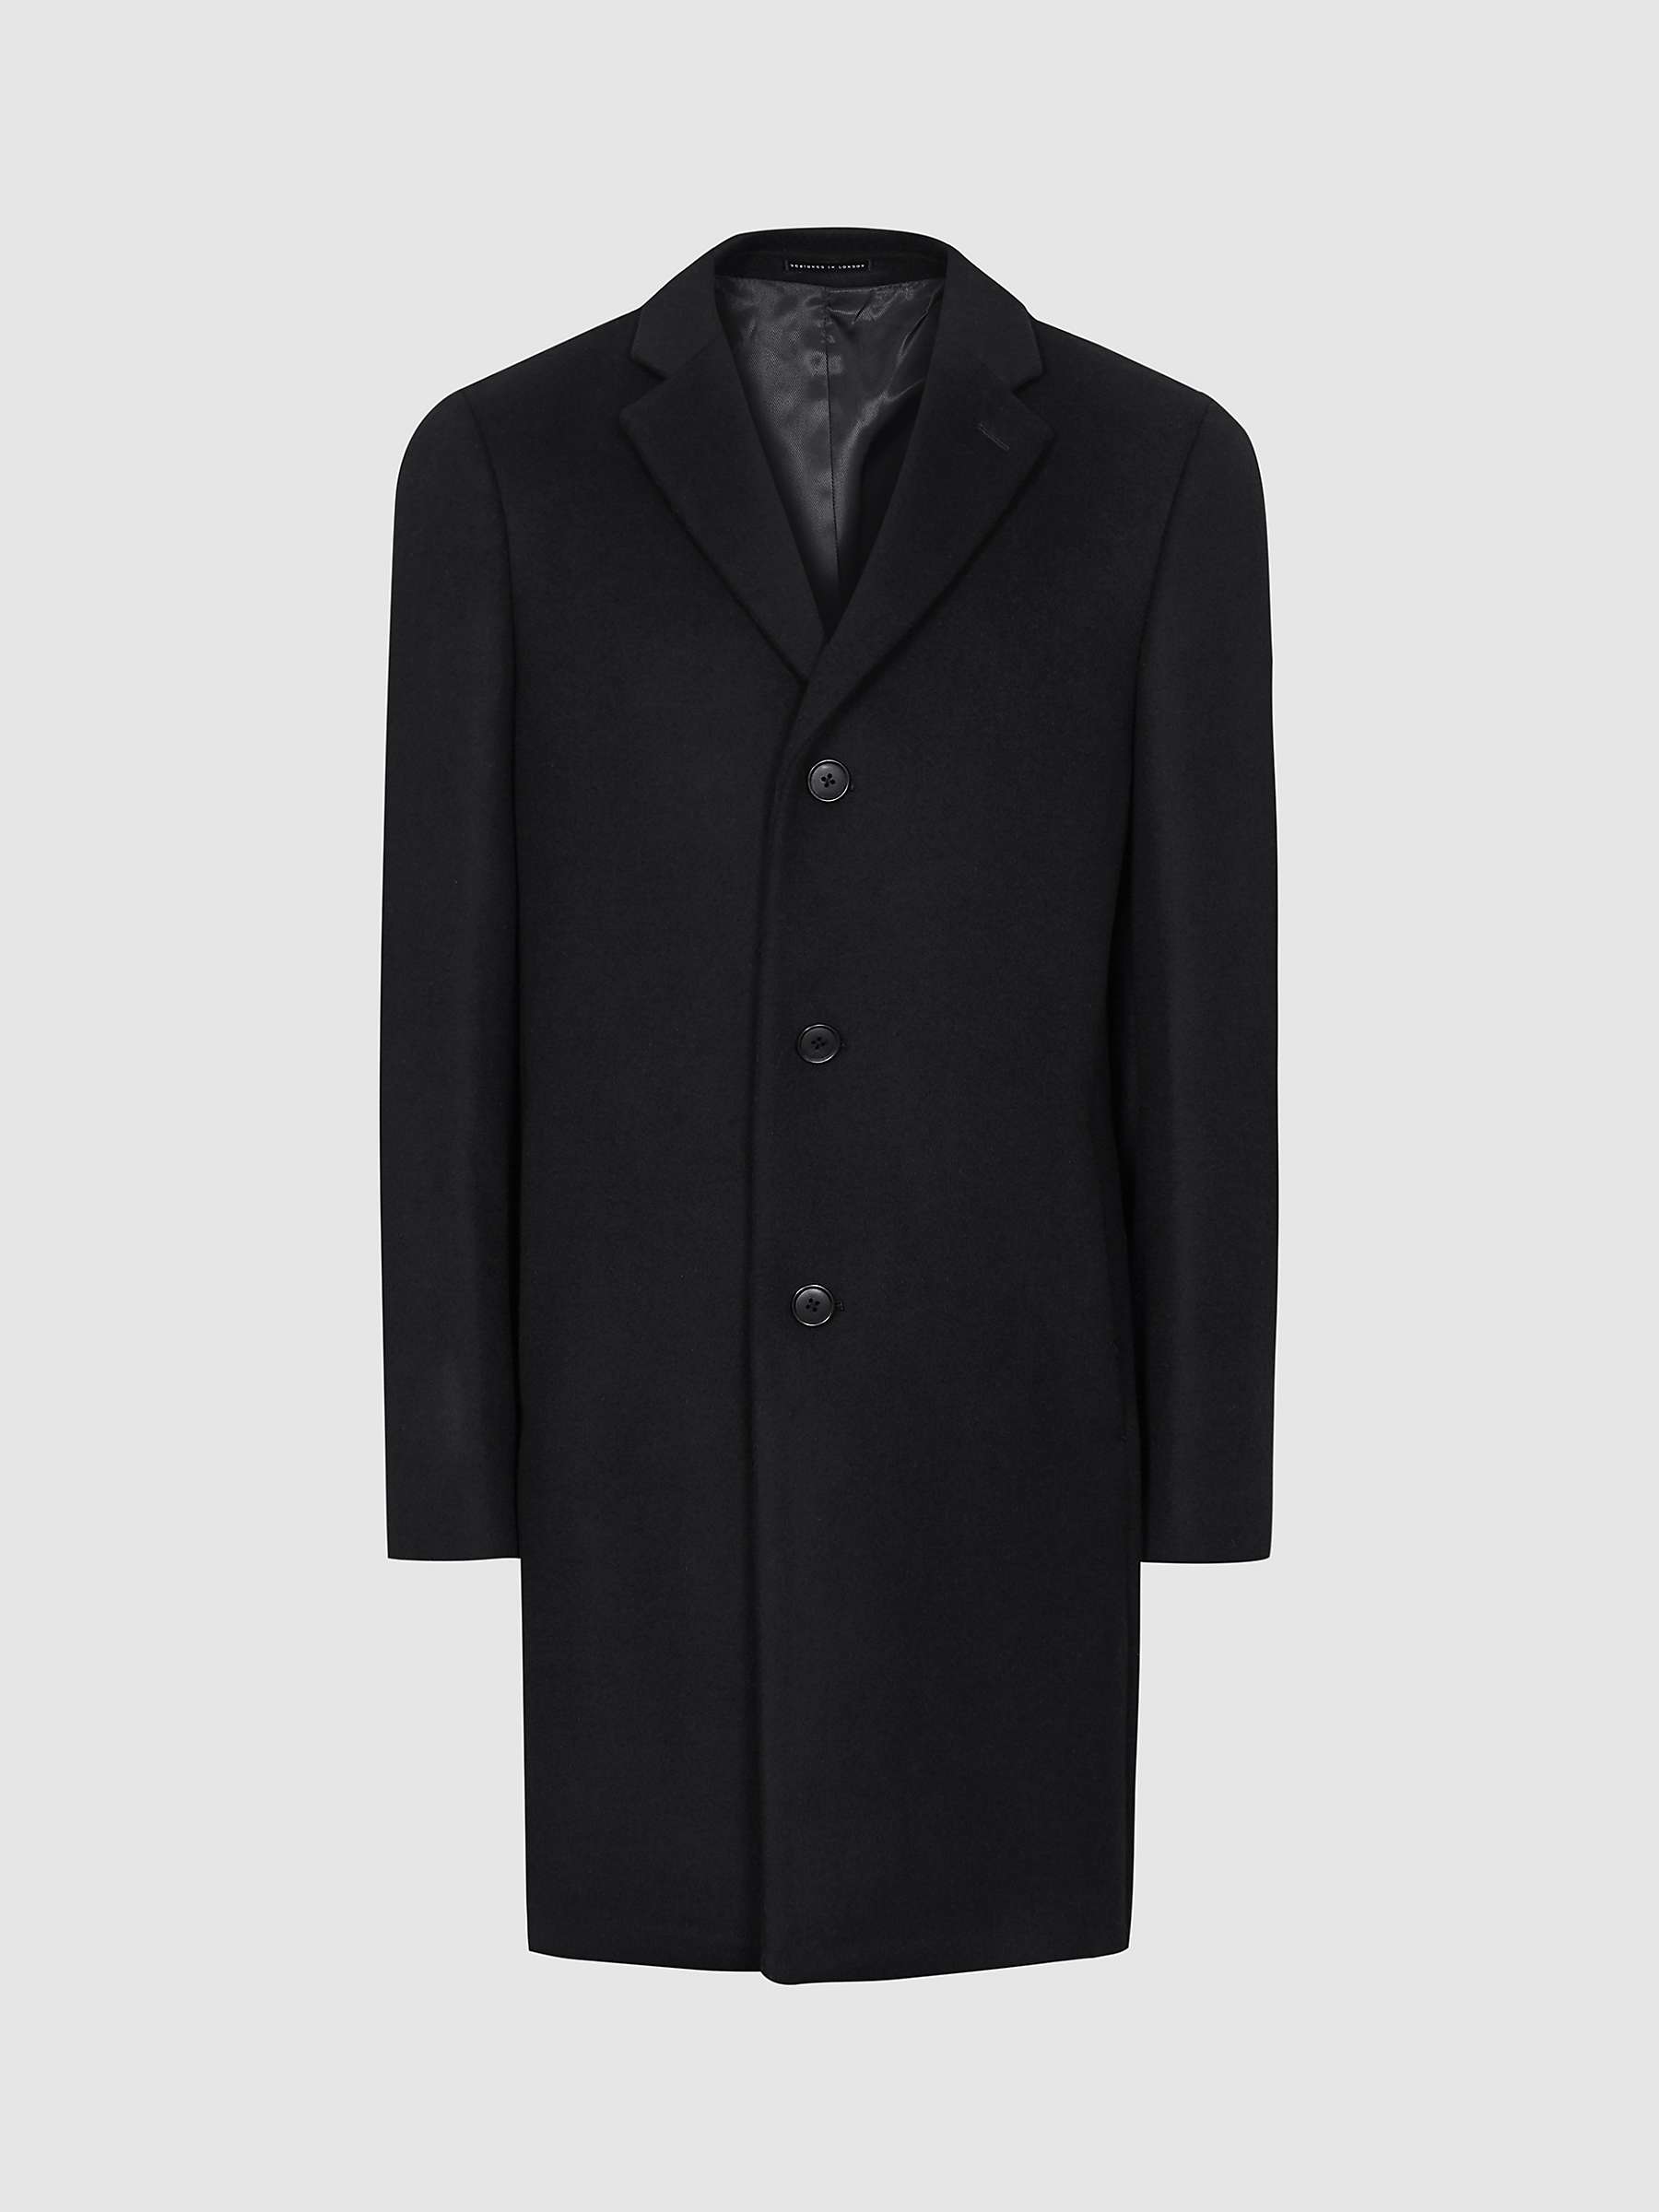 Buy Reiss Gable Wool Epsom Overcoat Online at johnlewis.com